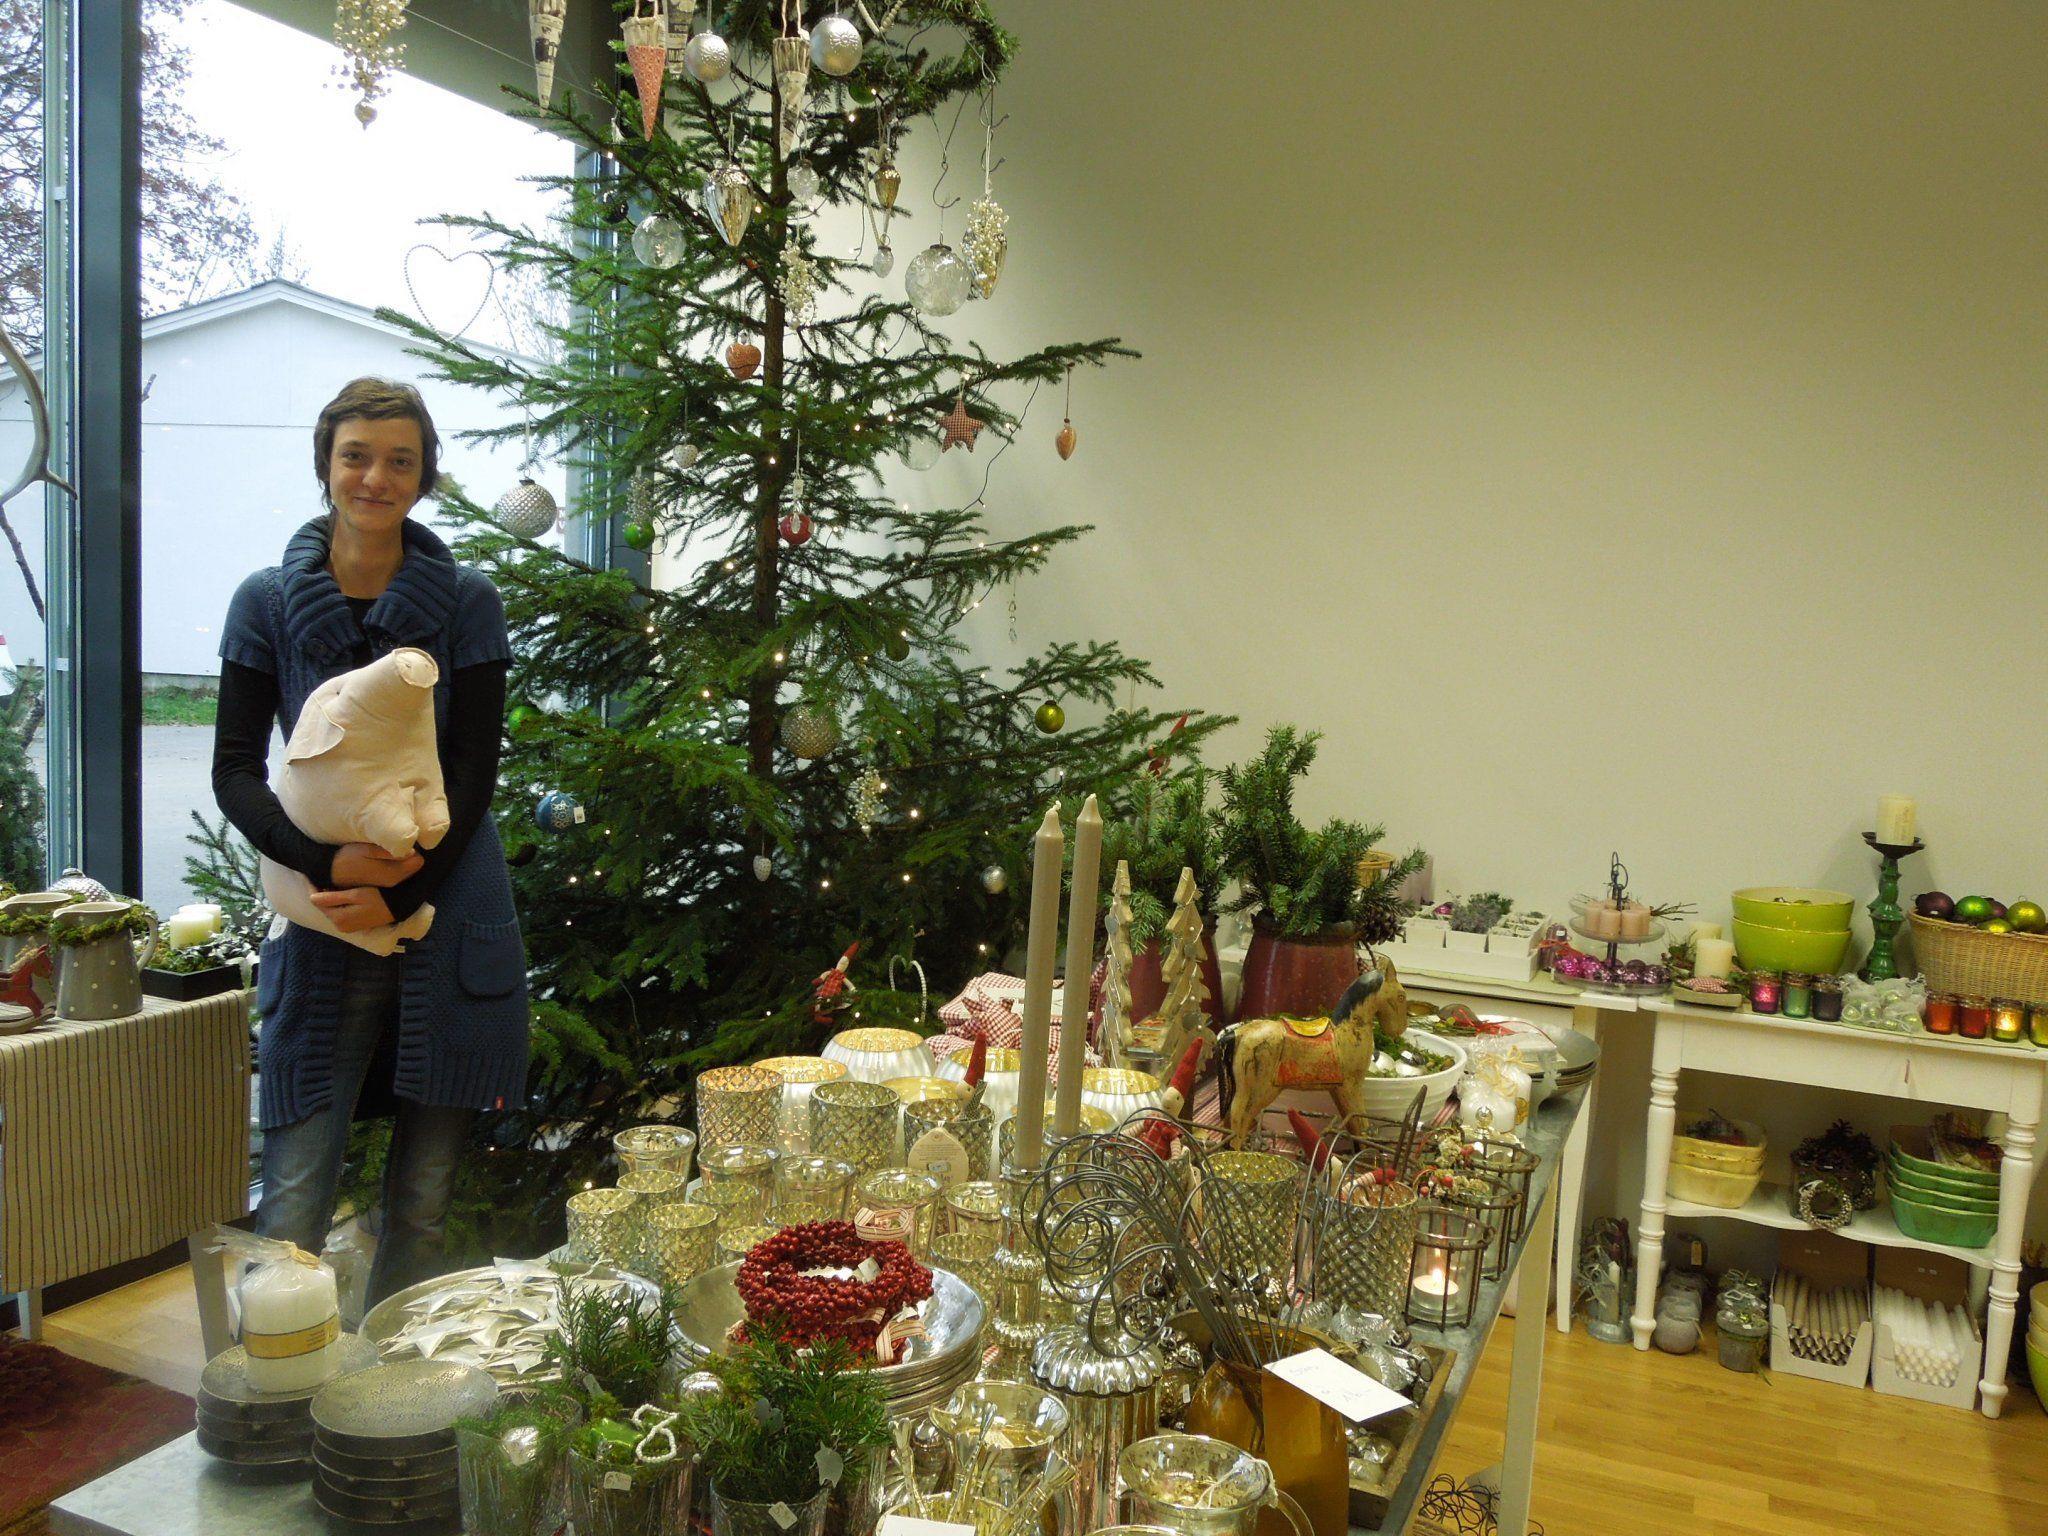 Letzte Woche wurde die Weihnachtsausstellung im Zeitlos schön von Elke Krainer eröffnet.